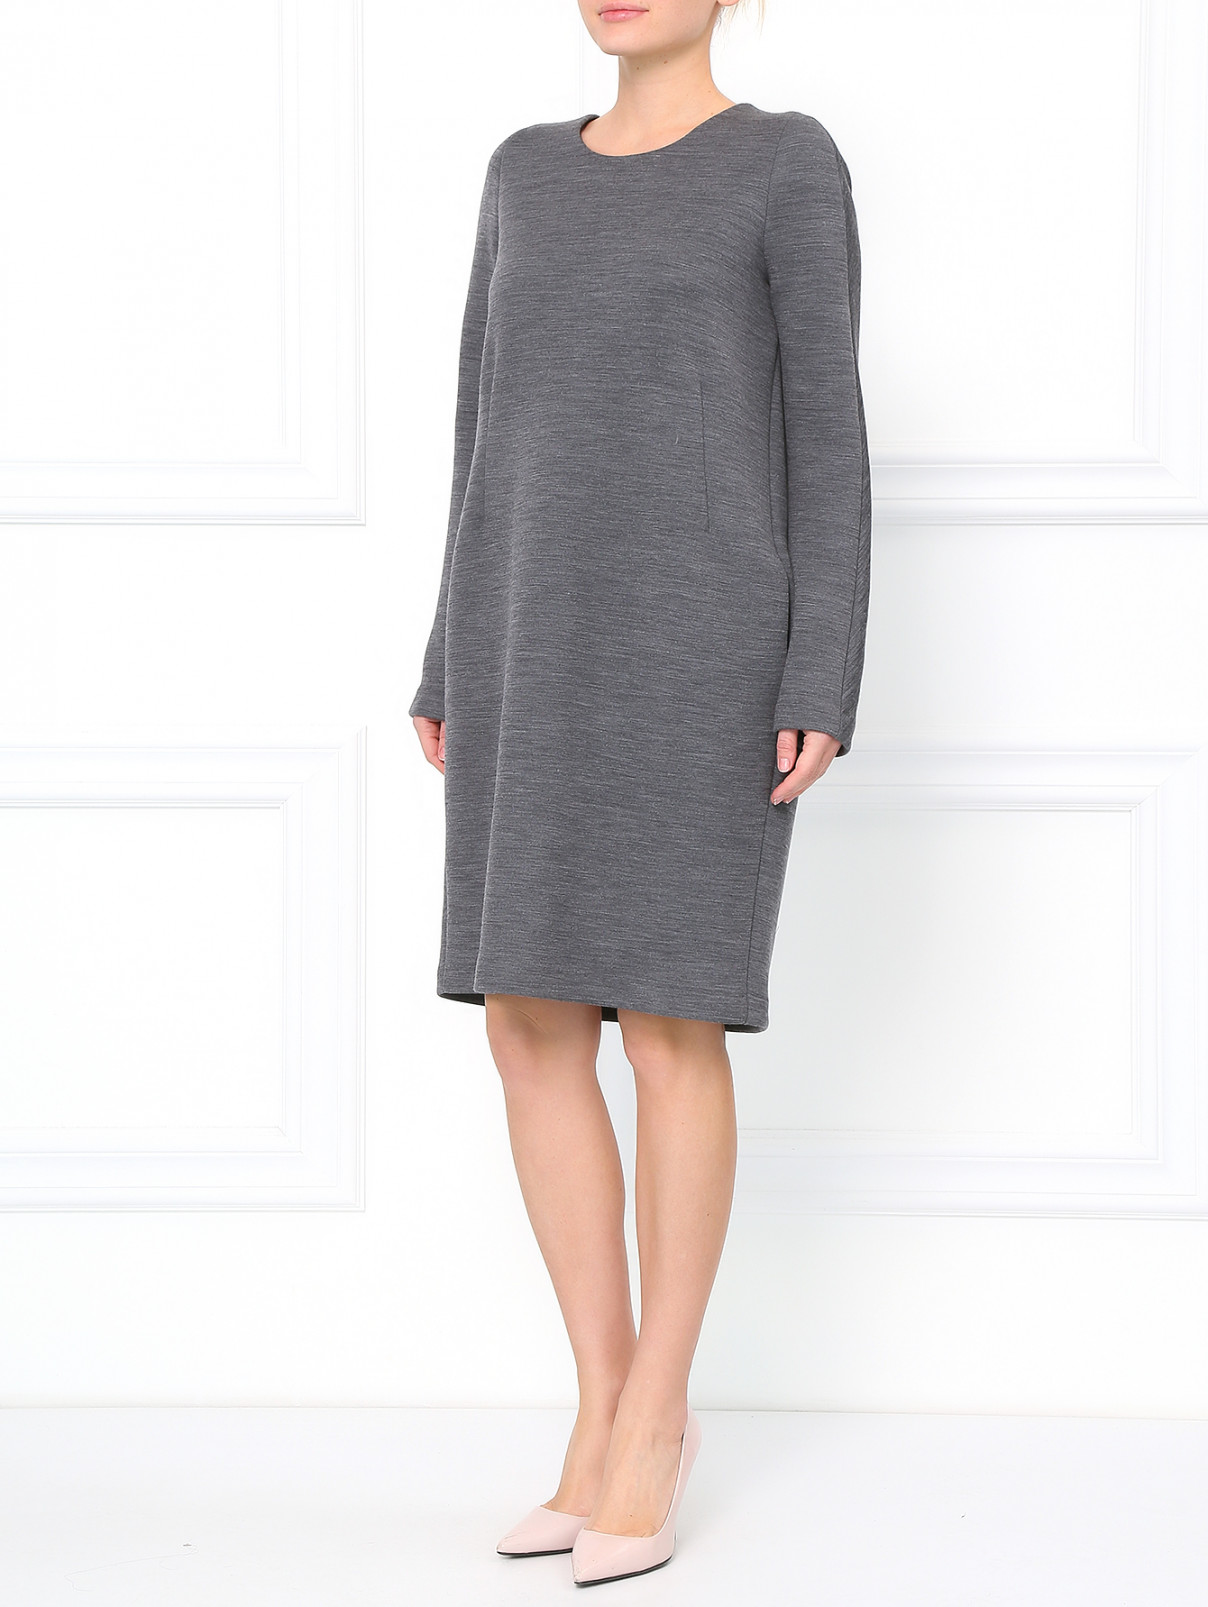 Свободное платье из шерсти Jil Sander  –  Модель Общий вид  – Цвет:  Серый